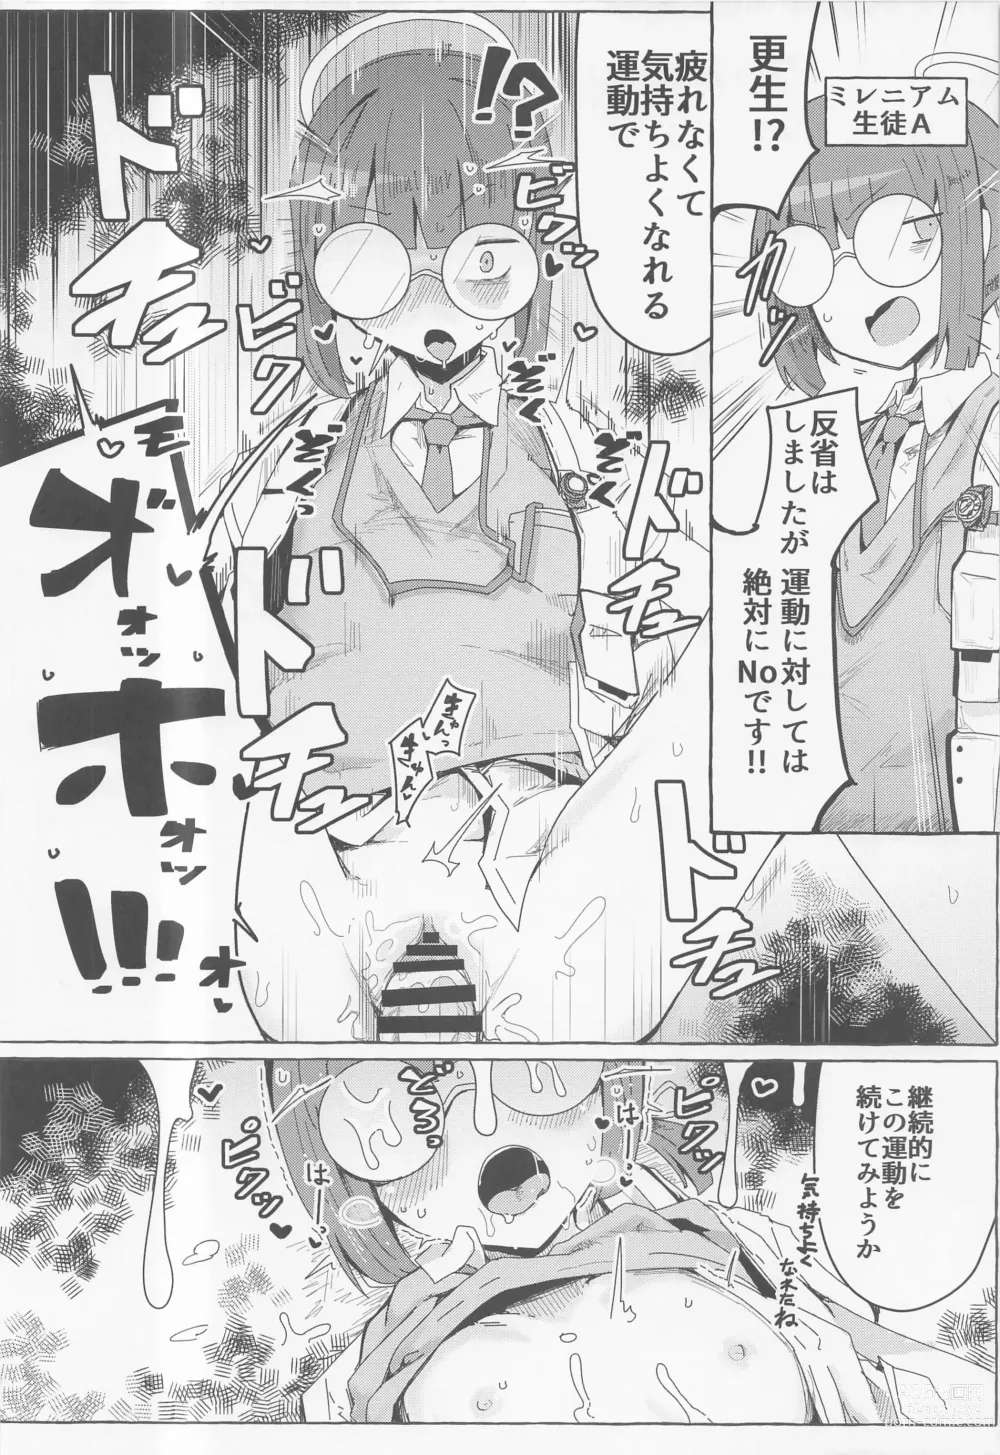 Page 15 of doujinshi BlueArc Mob Erohon.